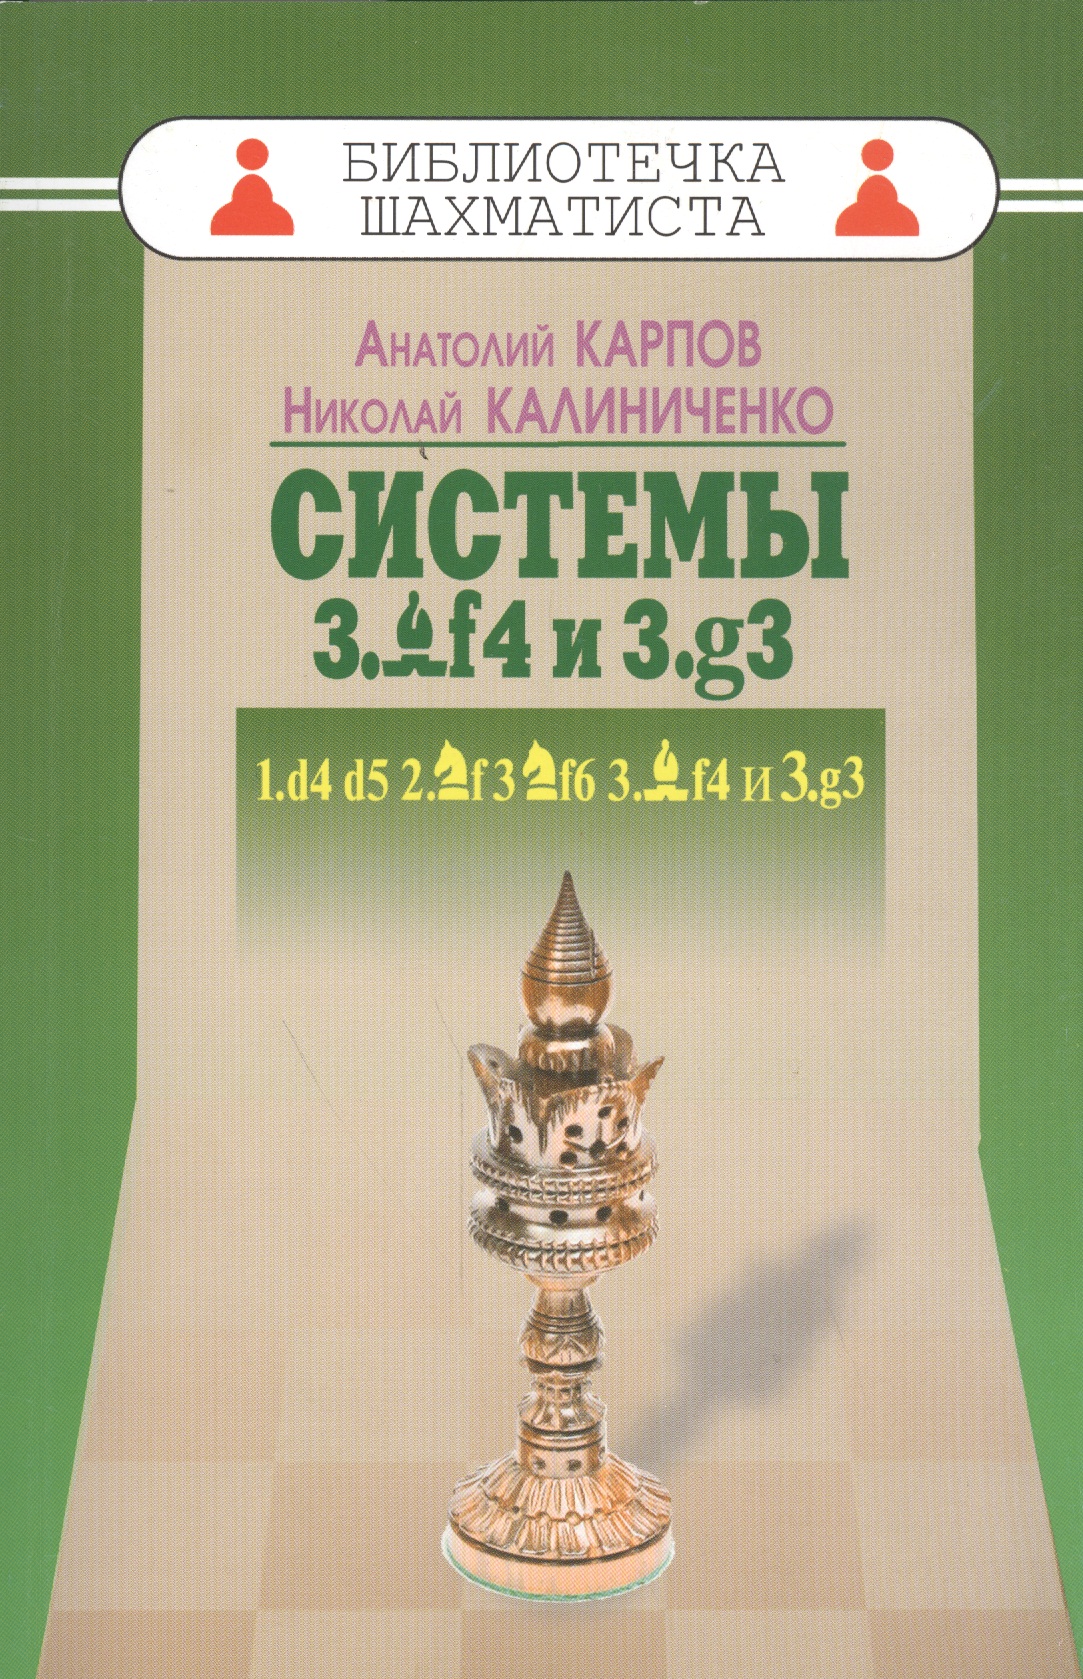 Карпов Анатолий Евгеньевич Системы 3.Cf4 и 3.g3